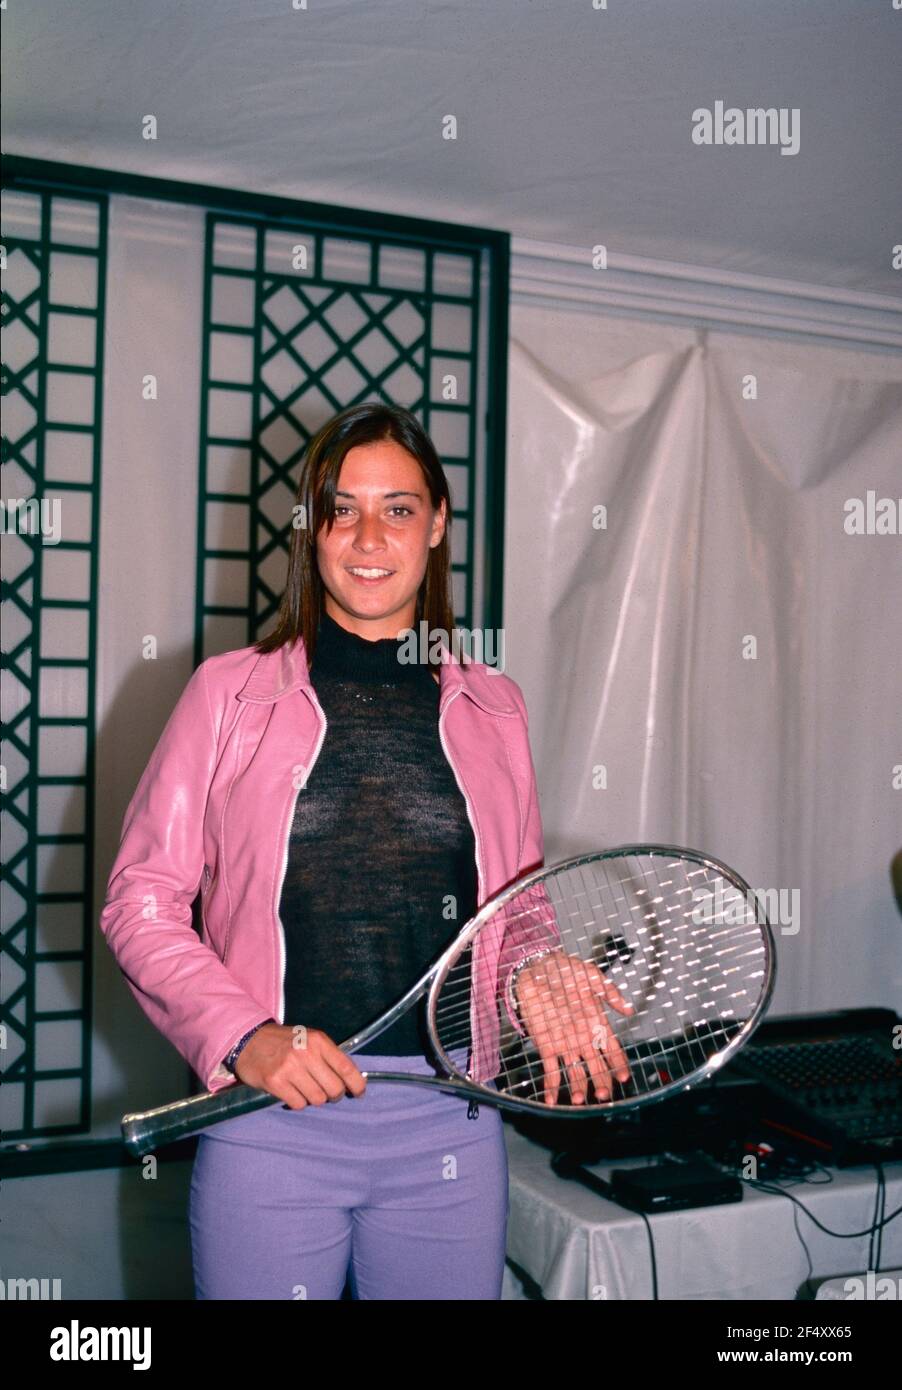 Italian tennis player Flavia Pennetta, Italian Open 2000 Stock Photo - Alamy